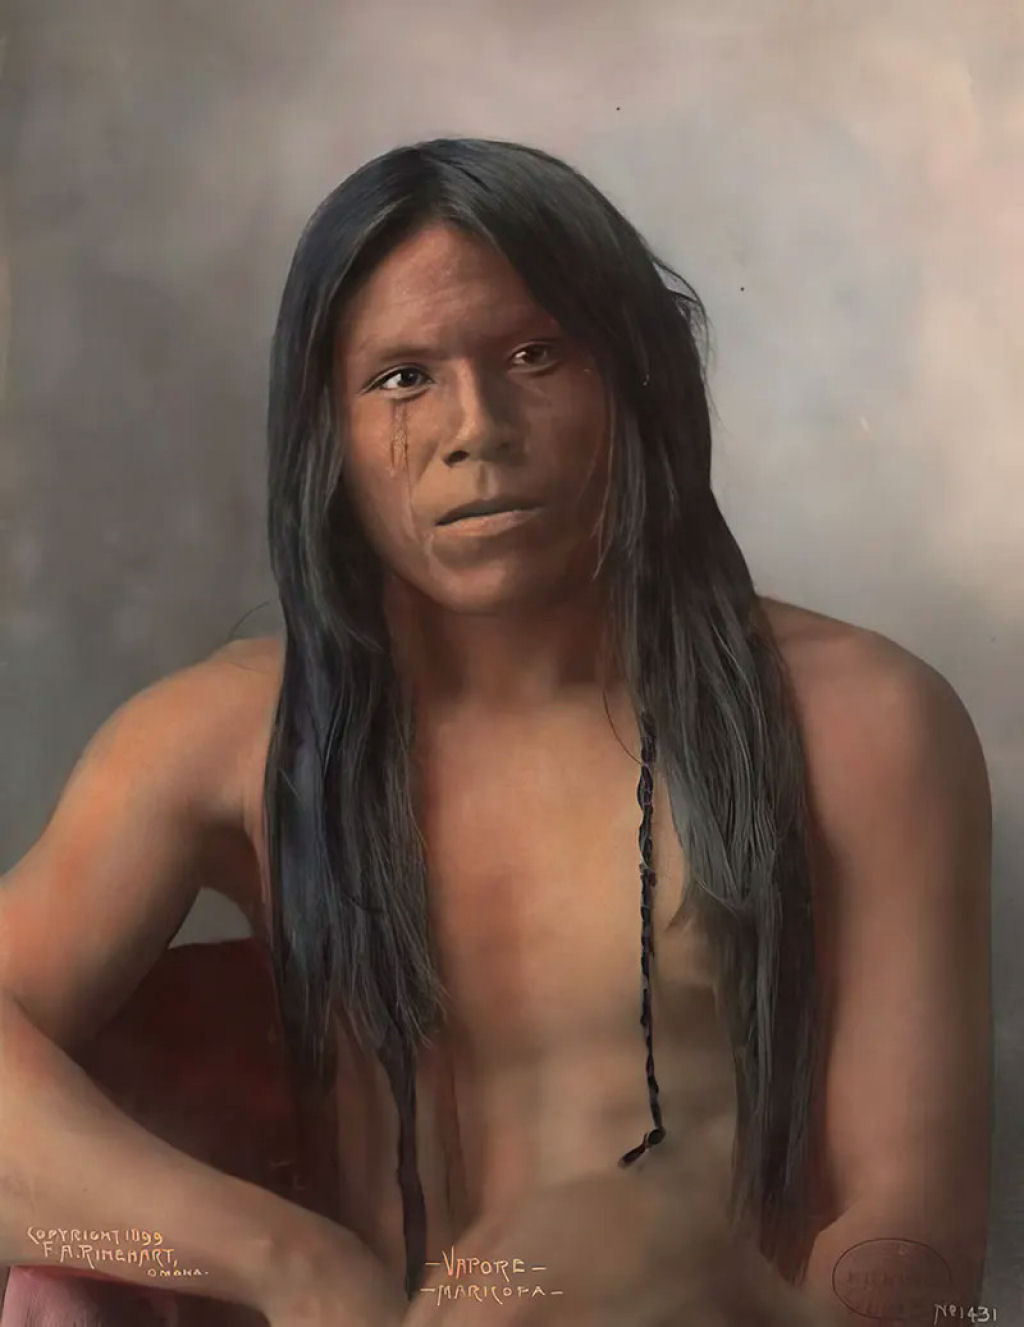 Impressionantes fotos históricas coloridas de nativos americanos do final do século 19 e início do século 20 23